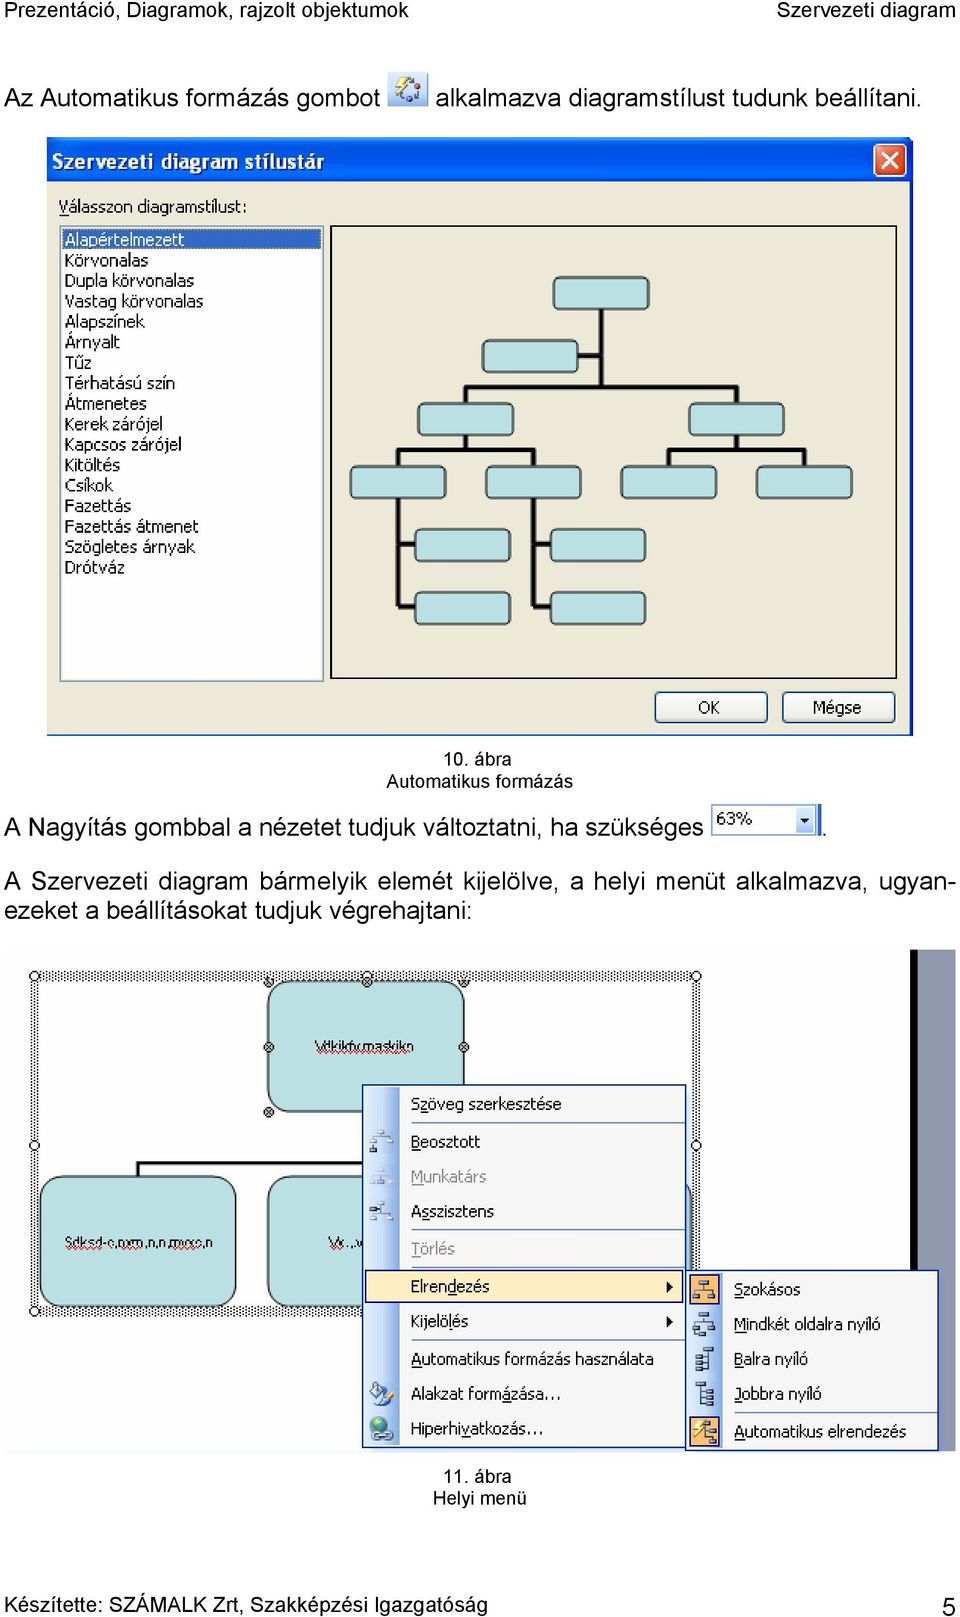 Prezentáció, Diagramok, rajzolt objektumok. Szervezeti diagram - PDF Free Download